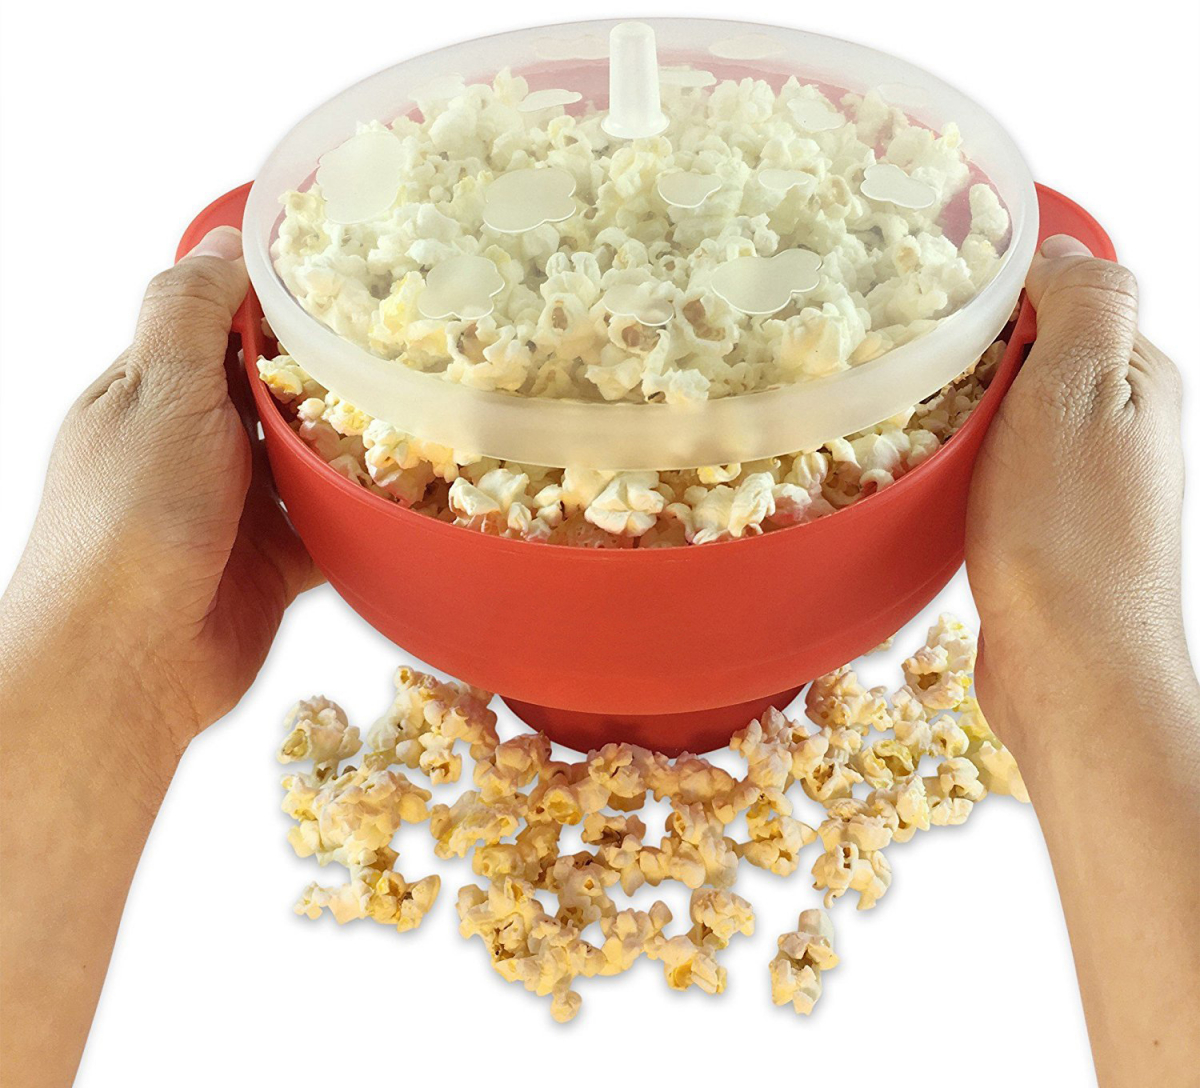 Mikrosäker popcornskål med lock, 24.1x14.7cm